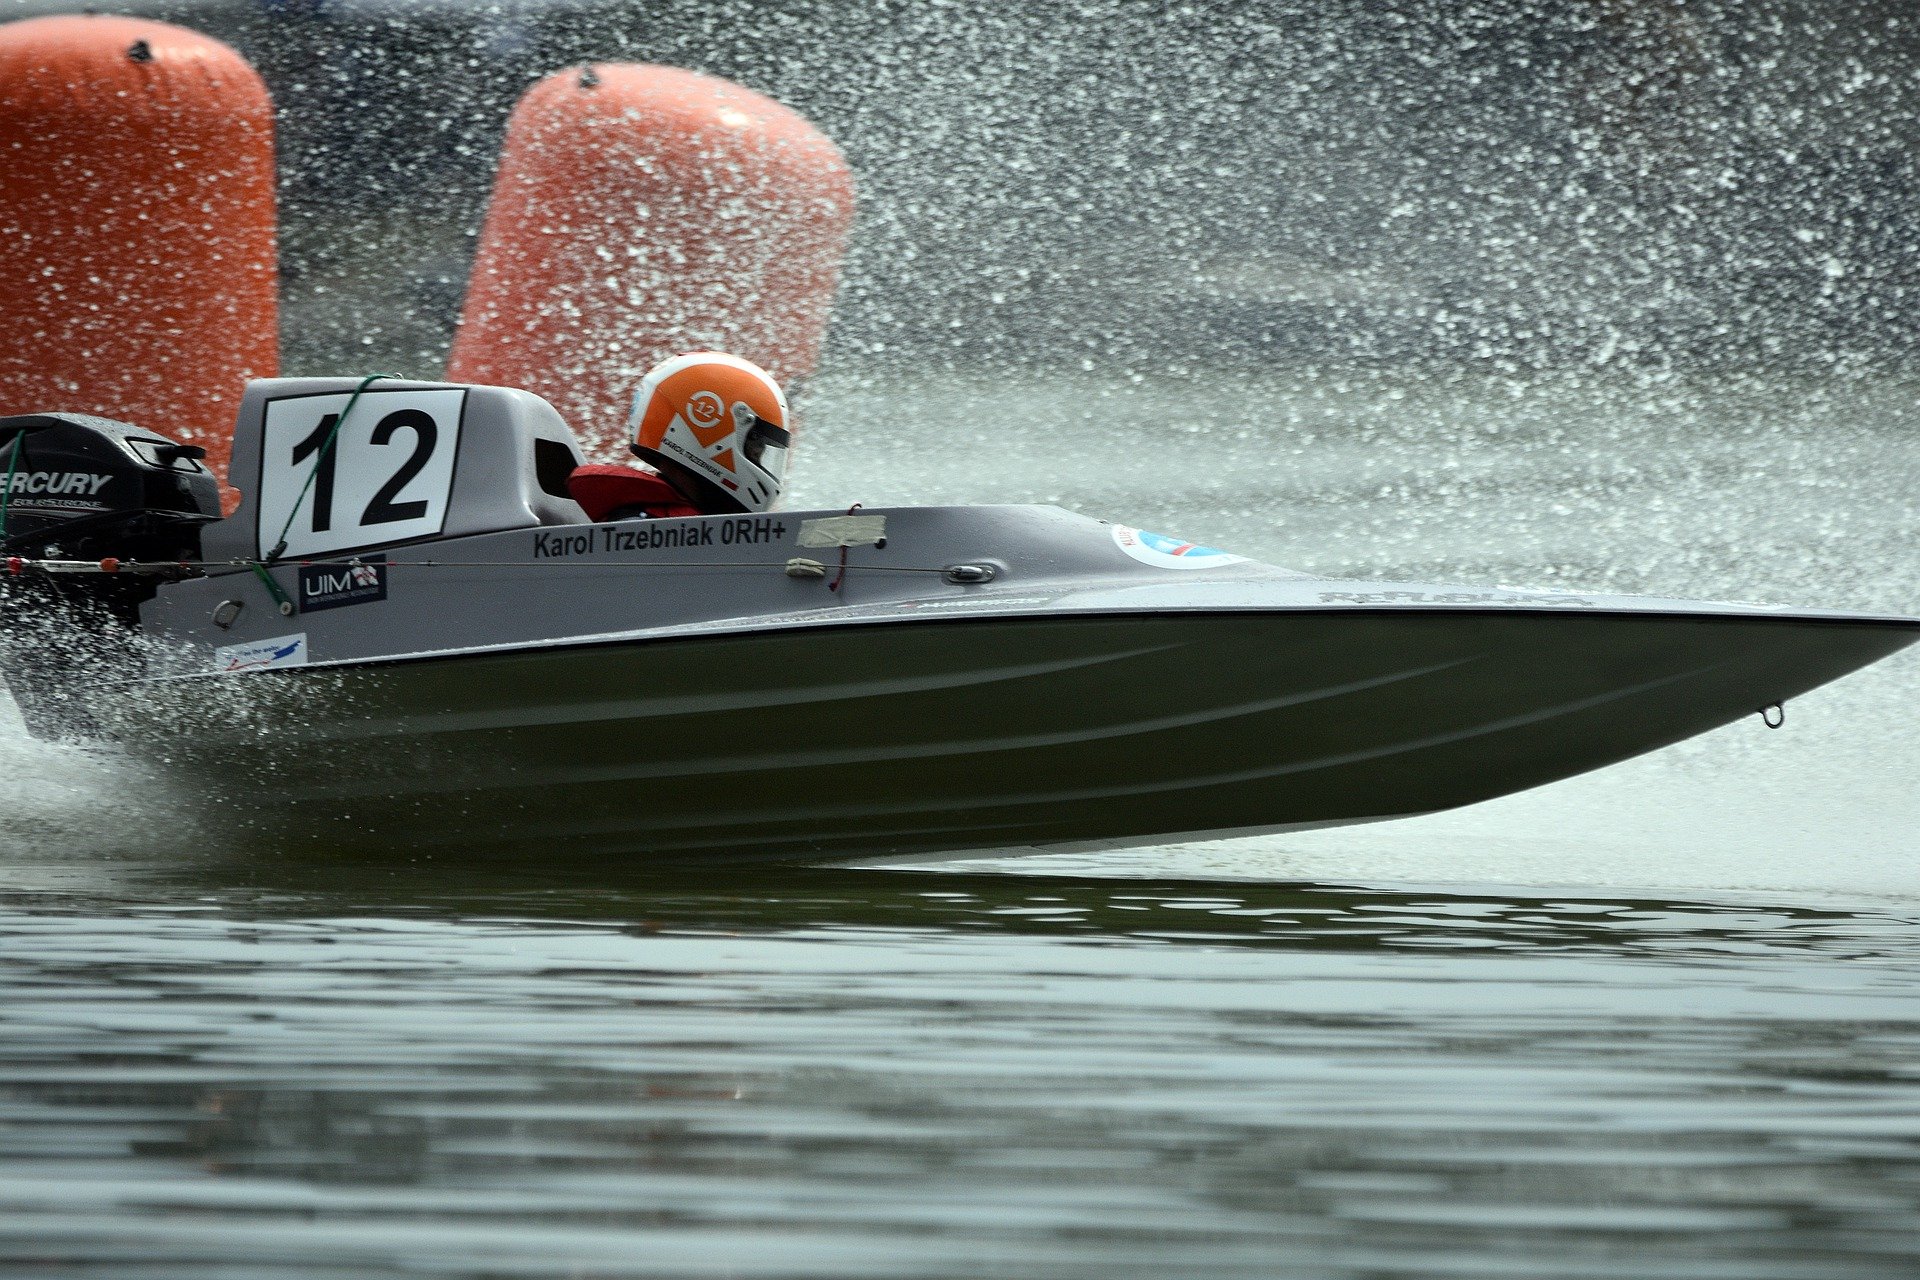 motorboat-race-7405127_1920 (1)